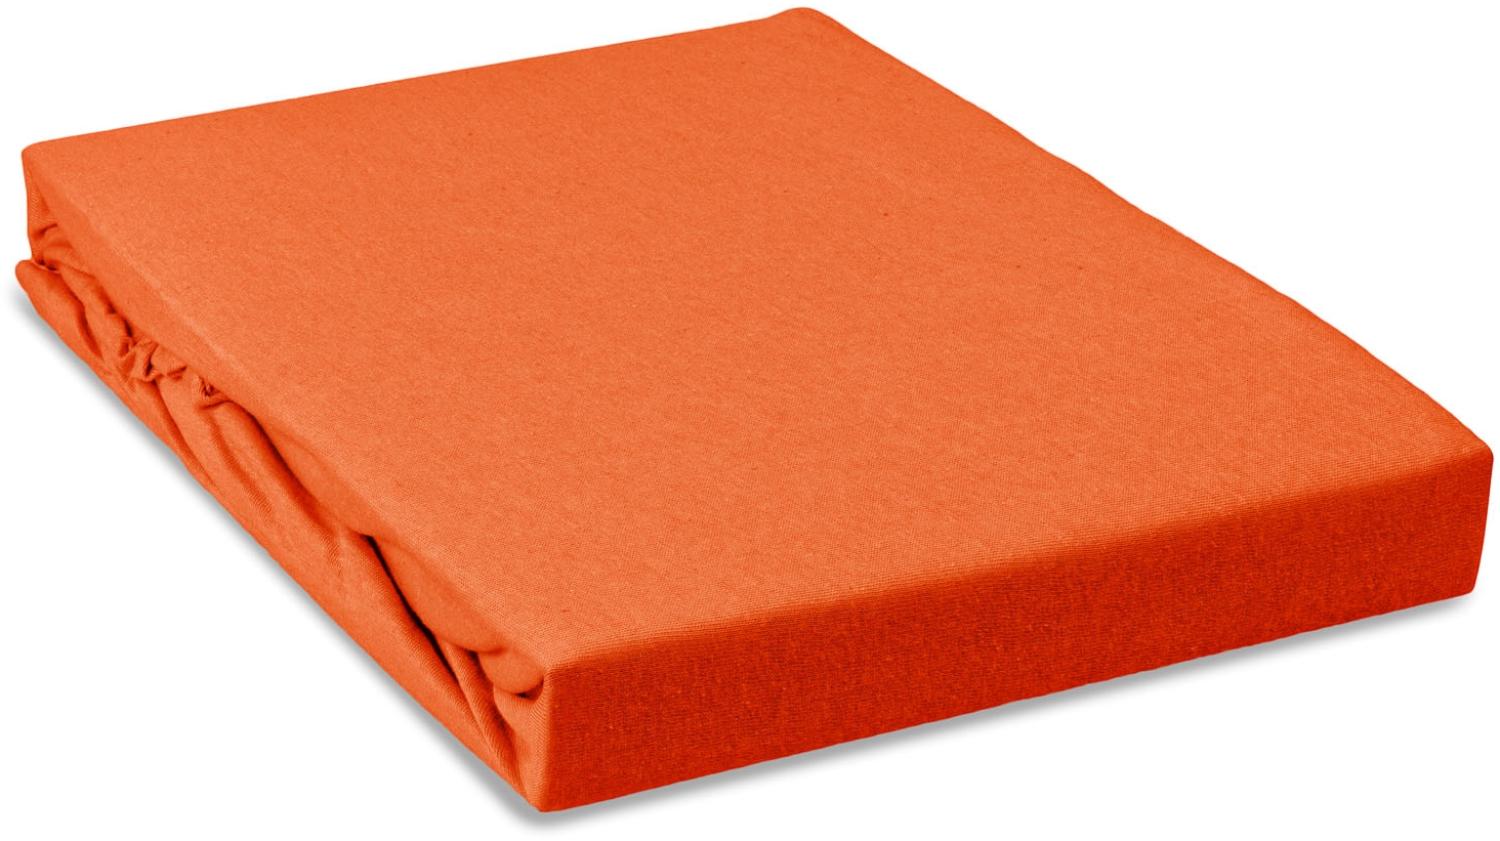 Jersey Kinder Spannbettlaken Betttuch 70x140cm 100% Baumwolle 130g/m² Öko-Tex Standard 100 Orange Bild 1